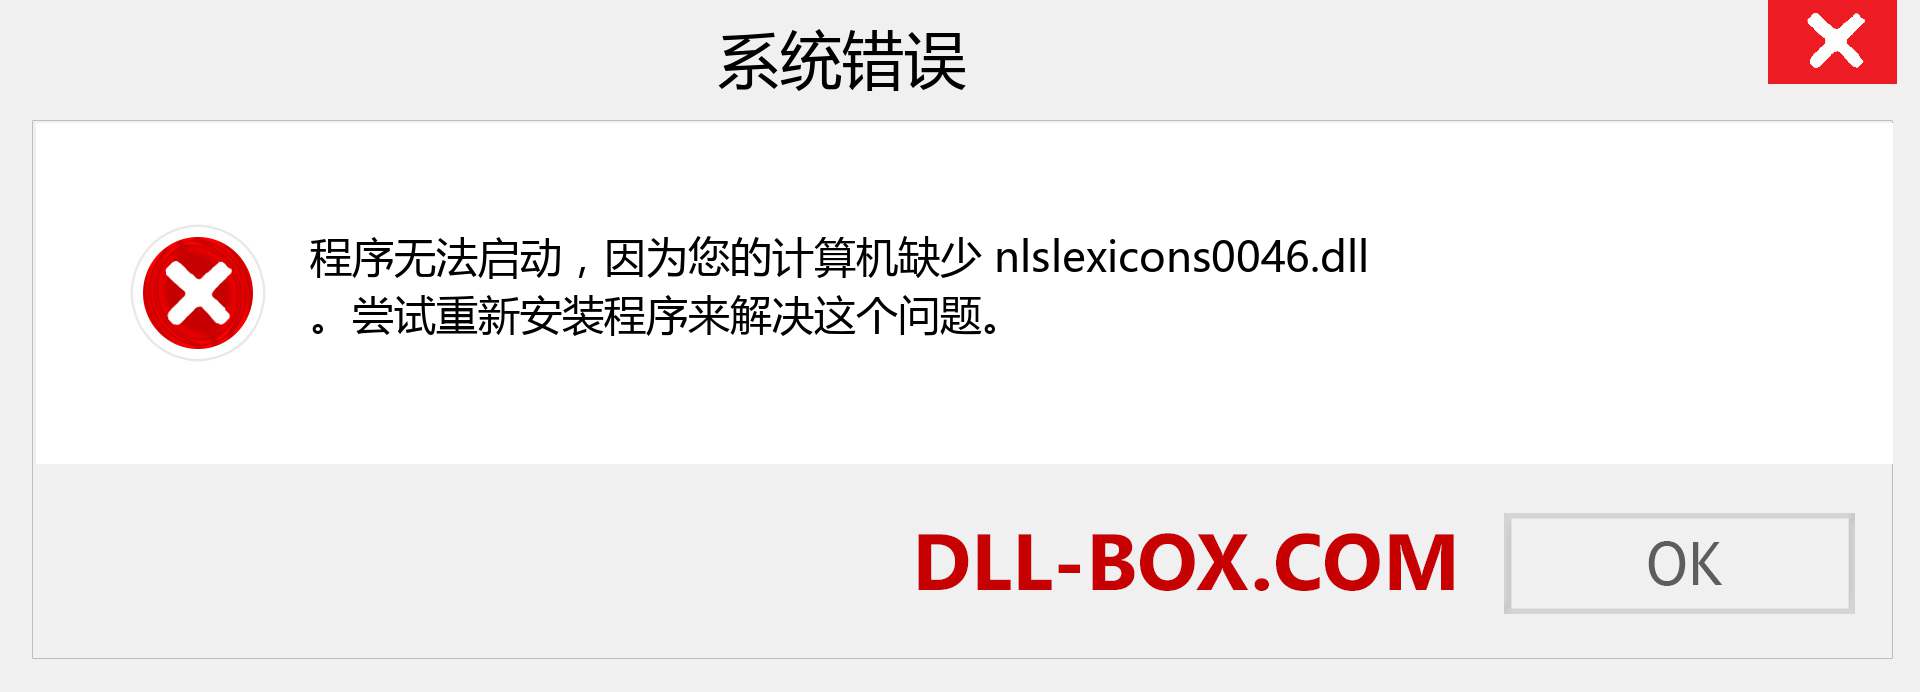 nlslexicons0046.dll 文件丢失？。 适用于 Windows 7、8、10 的下载 - 修复 Windows、照片、图像上的 nlslexicons0046 dll 丢失错误